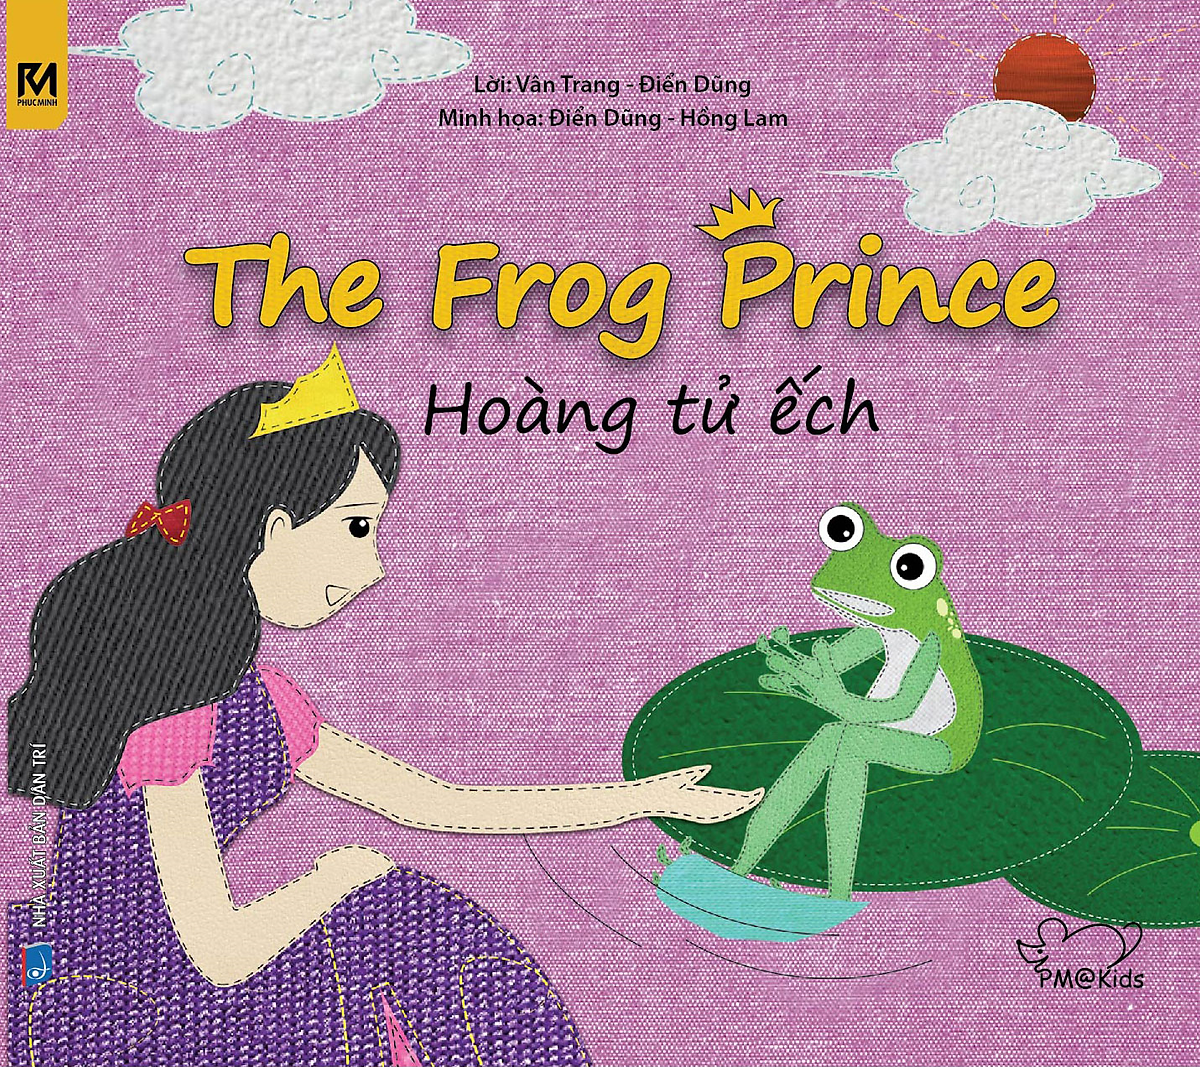 Cổ Tích Thế Giới - Hoàng Tử Ếch - The Frog Prince (Song Ngữ Anh - Việt)